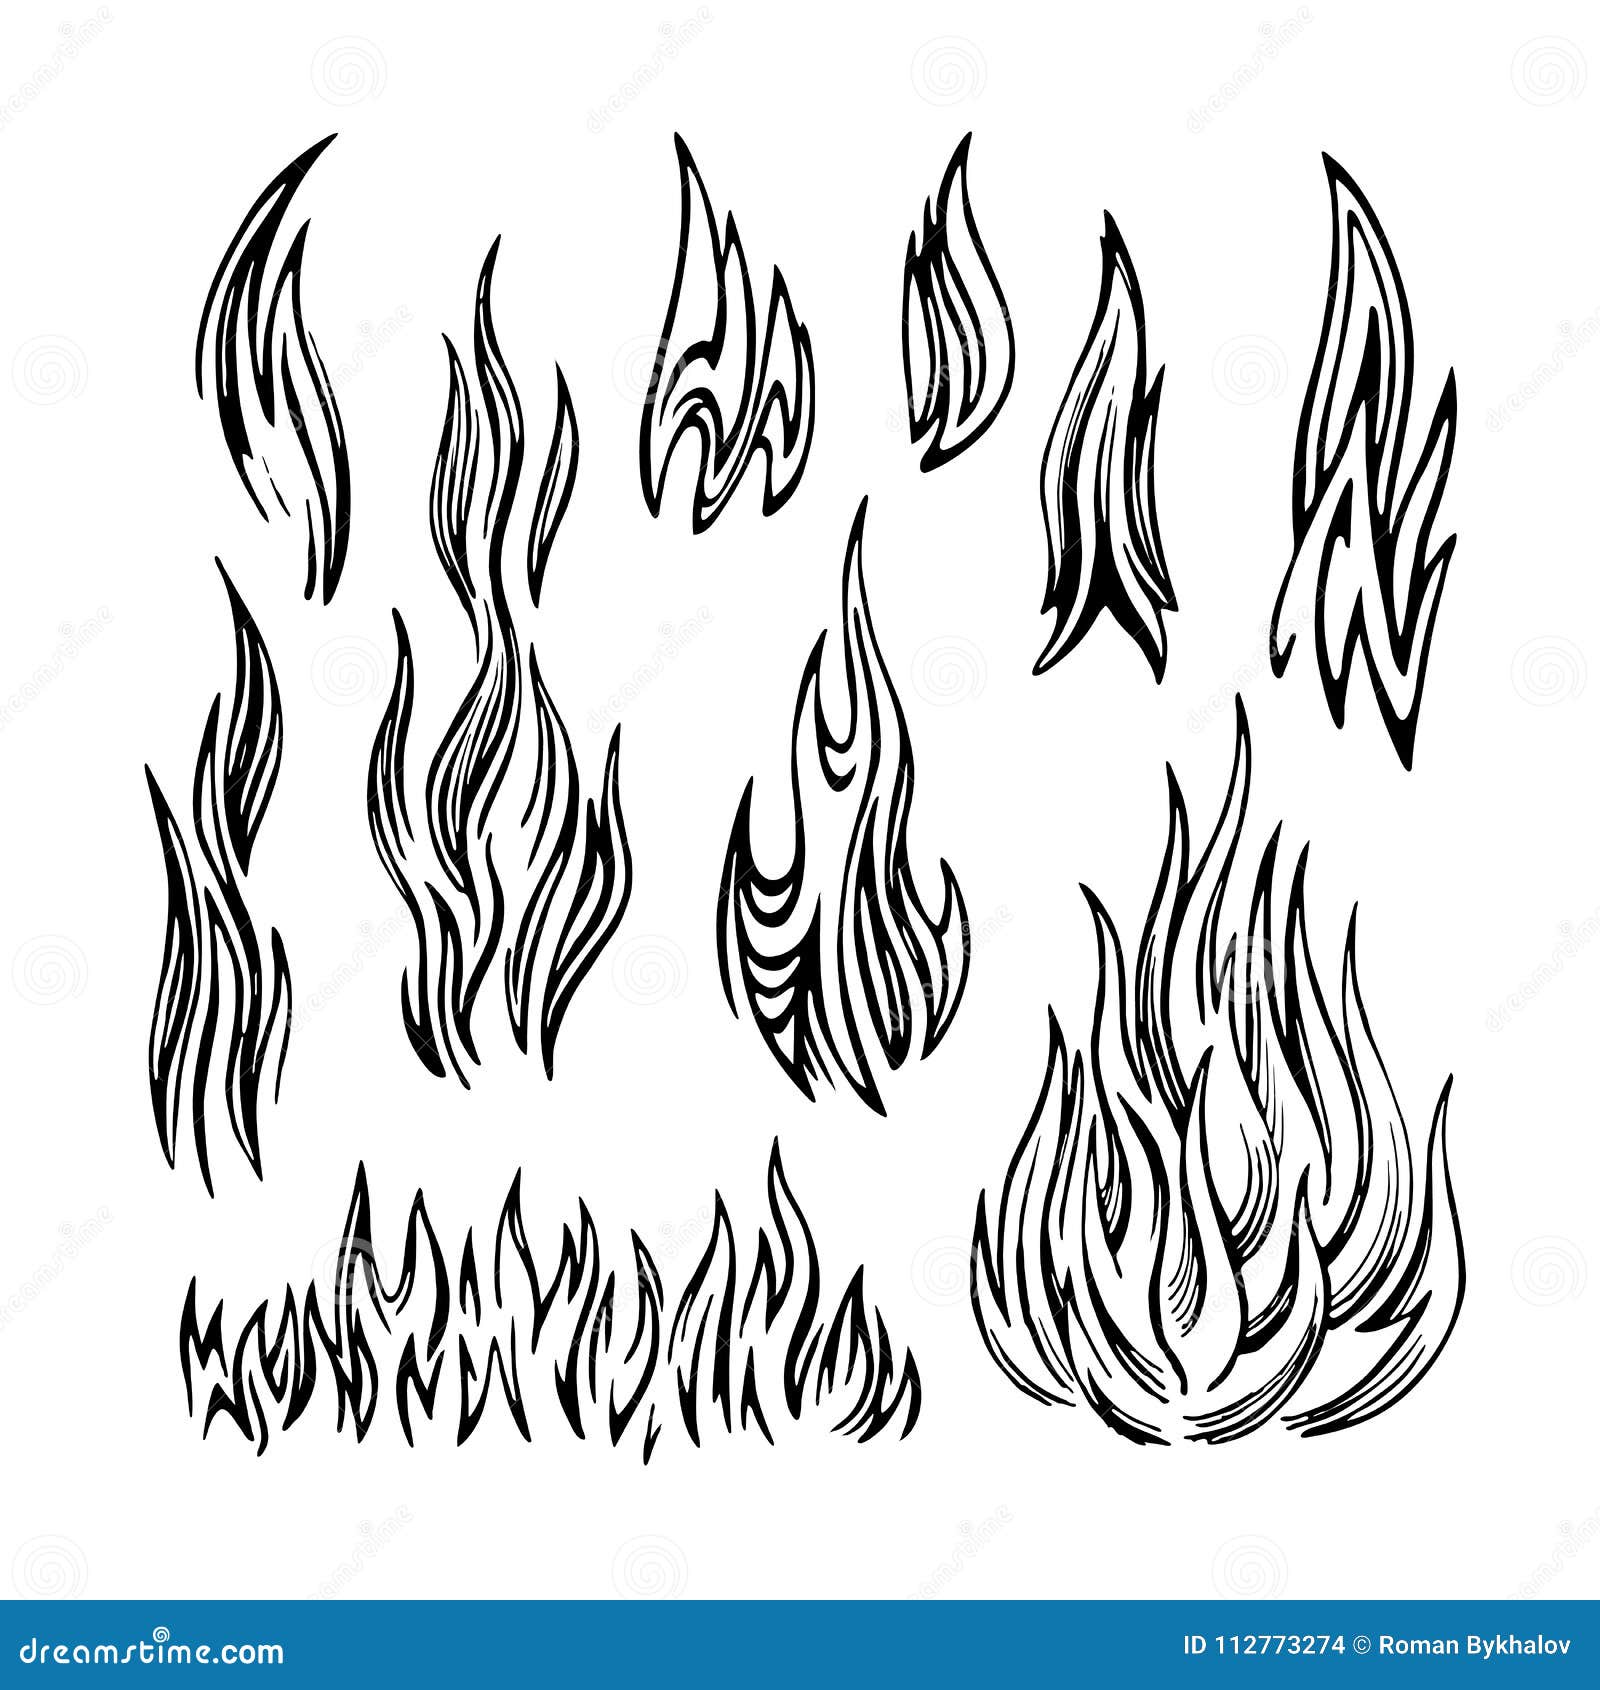 Guide de base sur le dessin de diverses formes de flammes par Cyfuko -  Astuces pour dessiner